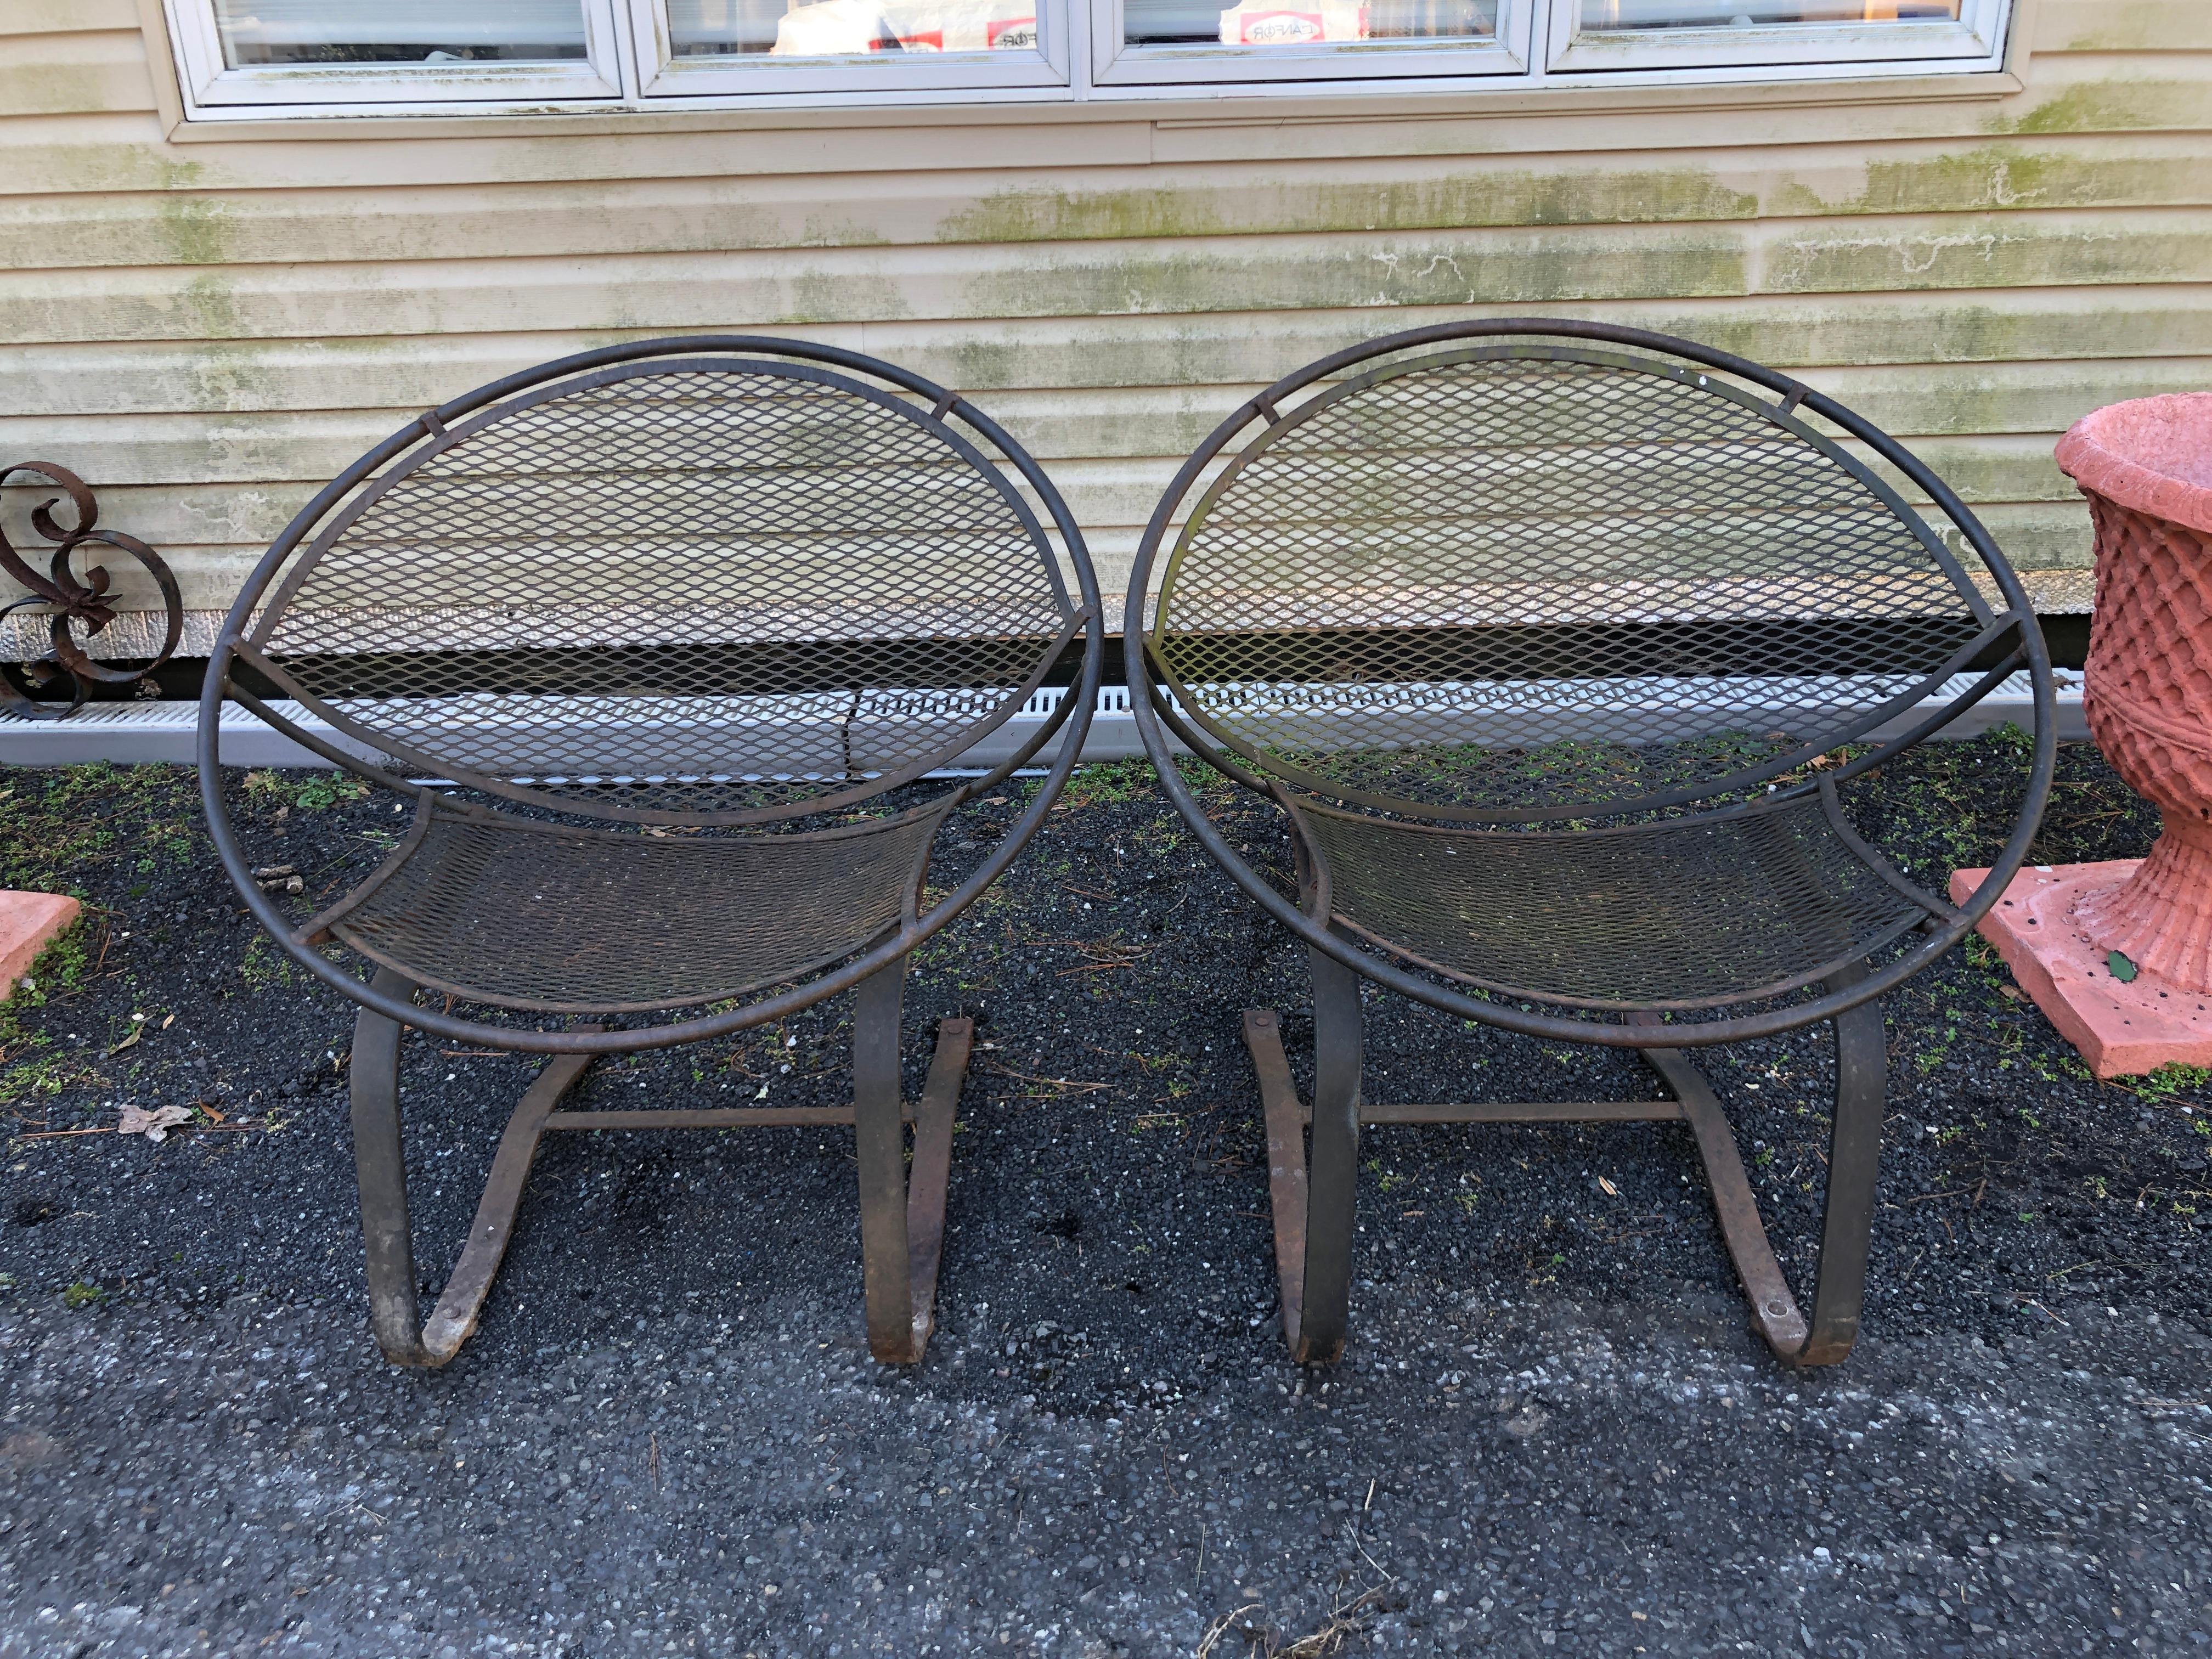 Magnifique paire de chaises de patio circulaires en fer forgé, conçues par Maurizio Tempestini pour Salterini. Il s'agit des chaises à piètement luge les plus recherchées. Elles mesurent 31,5 